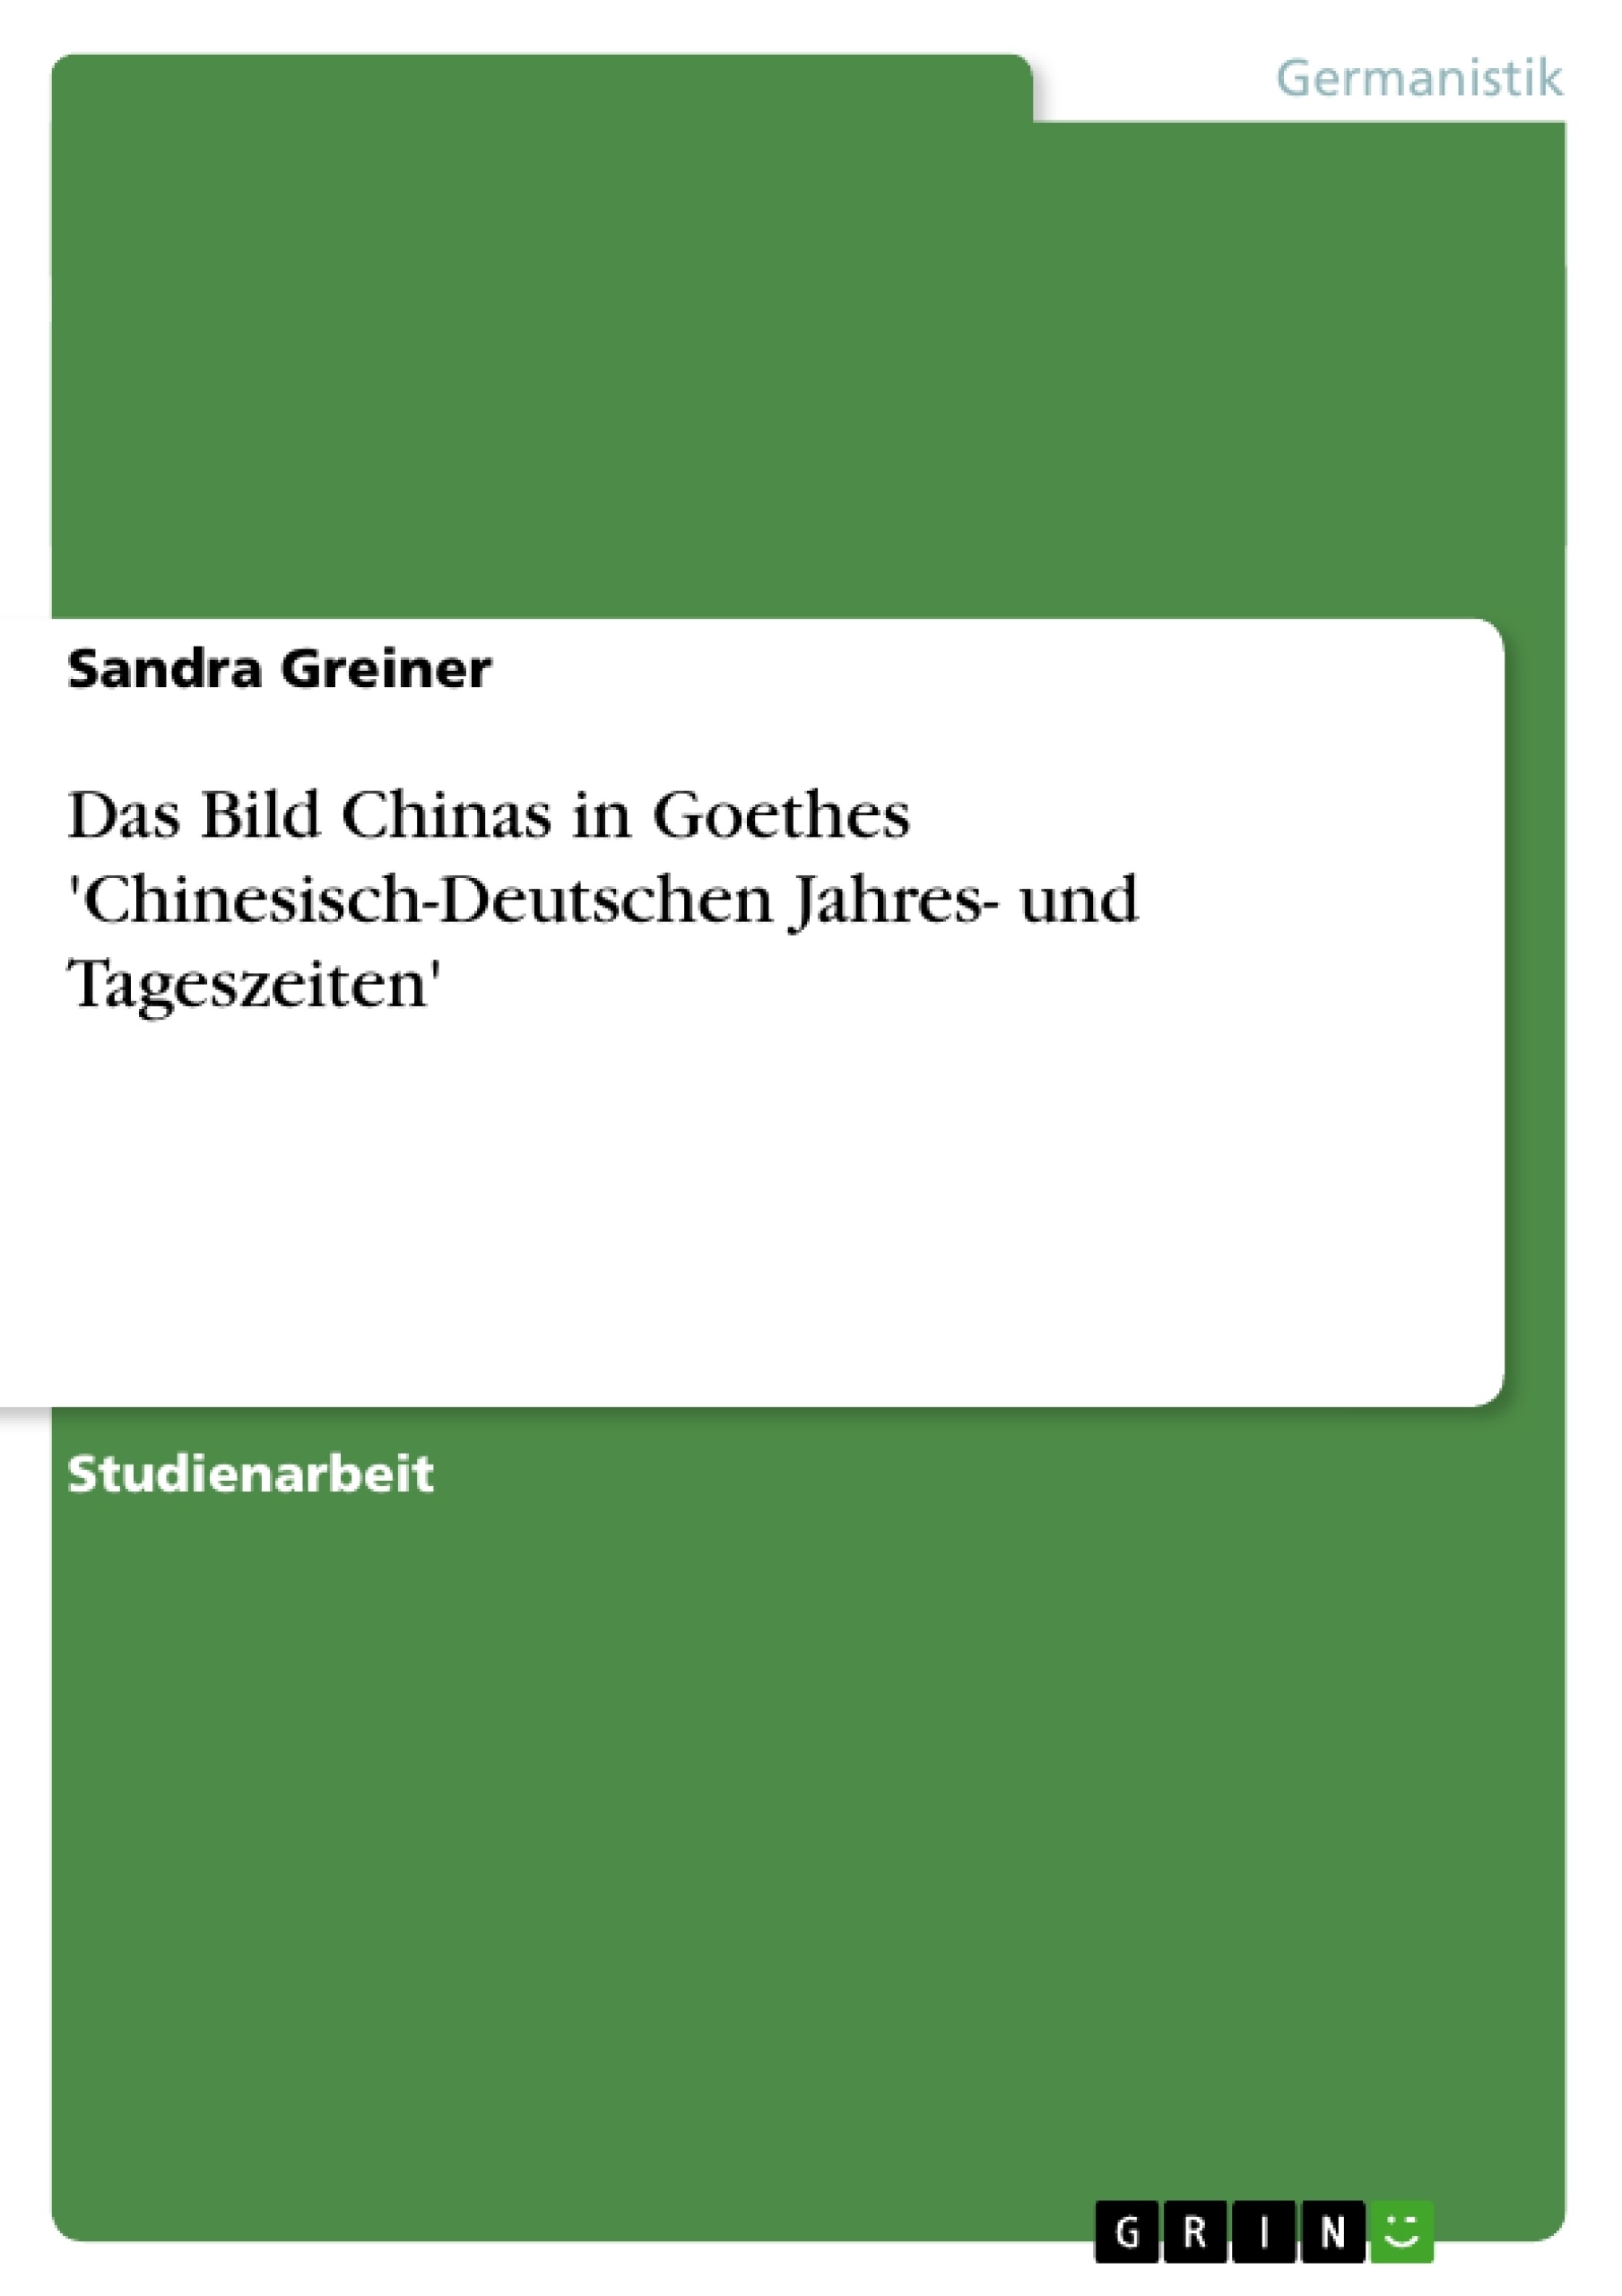 Title: Das Bild Chinas in Goethes 'Chinesisch-Deutschen Jahres- und Tageszeiten'